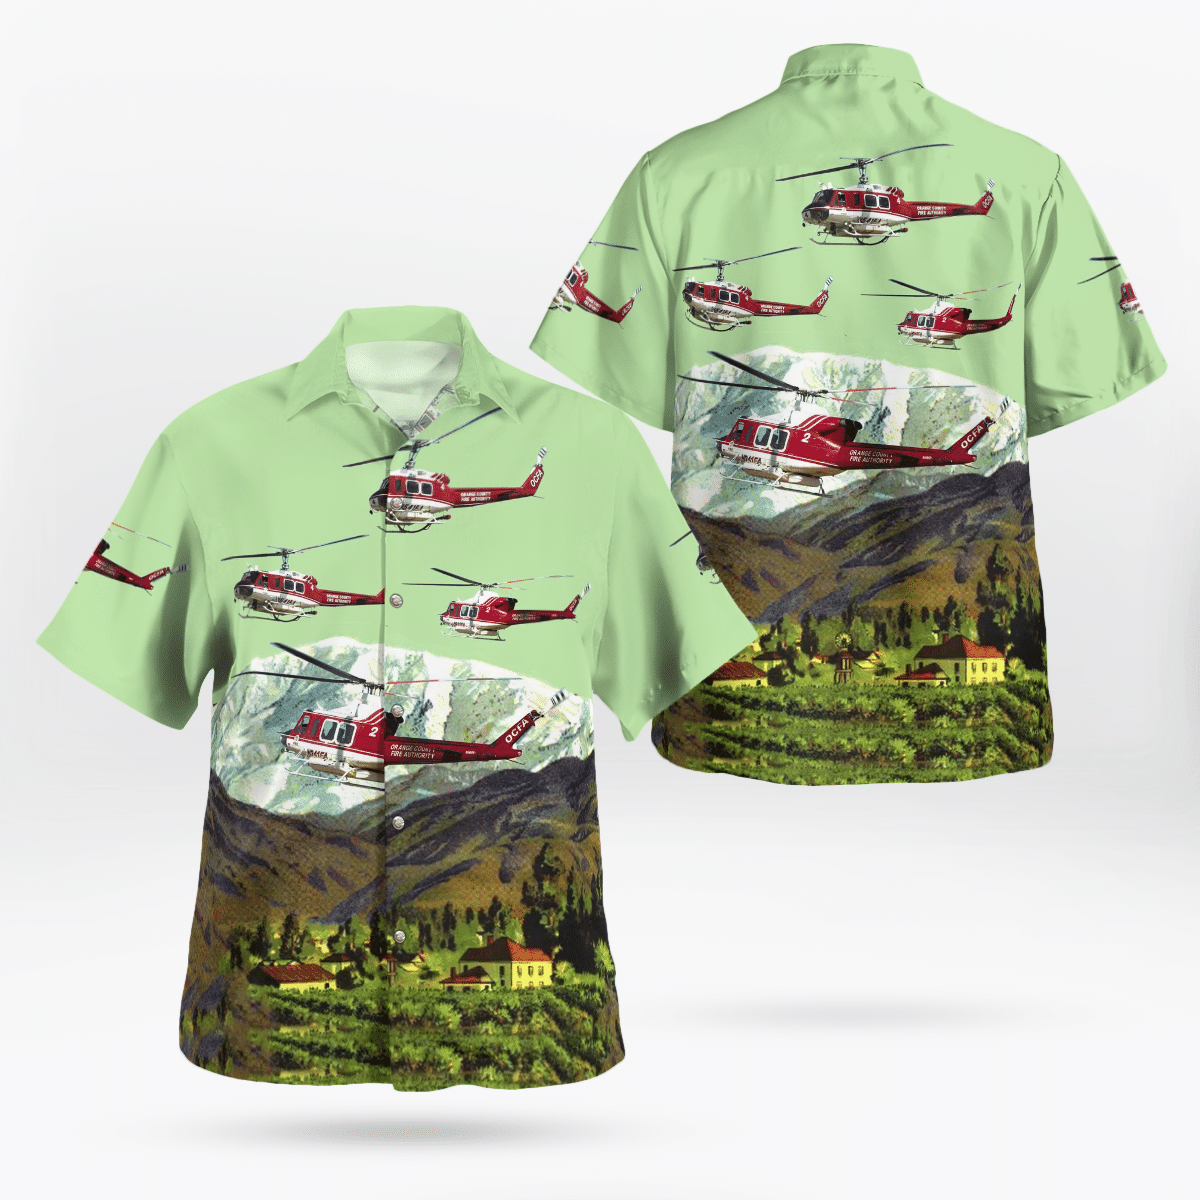 You won't regret buying these Aloha Shirt 69